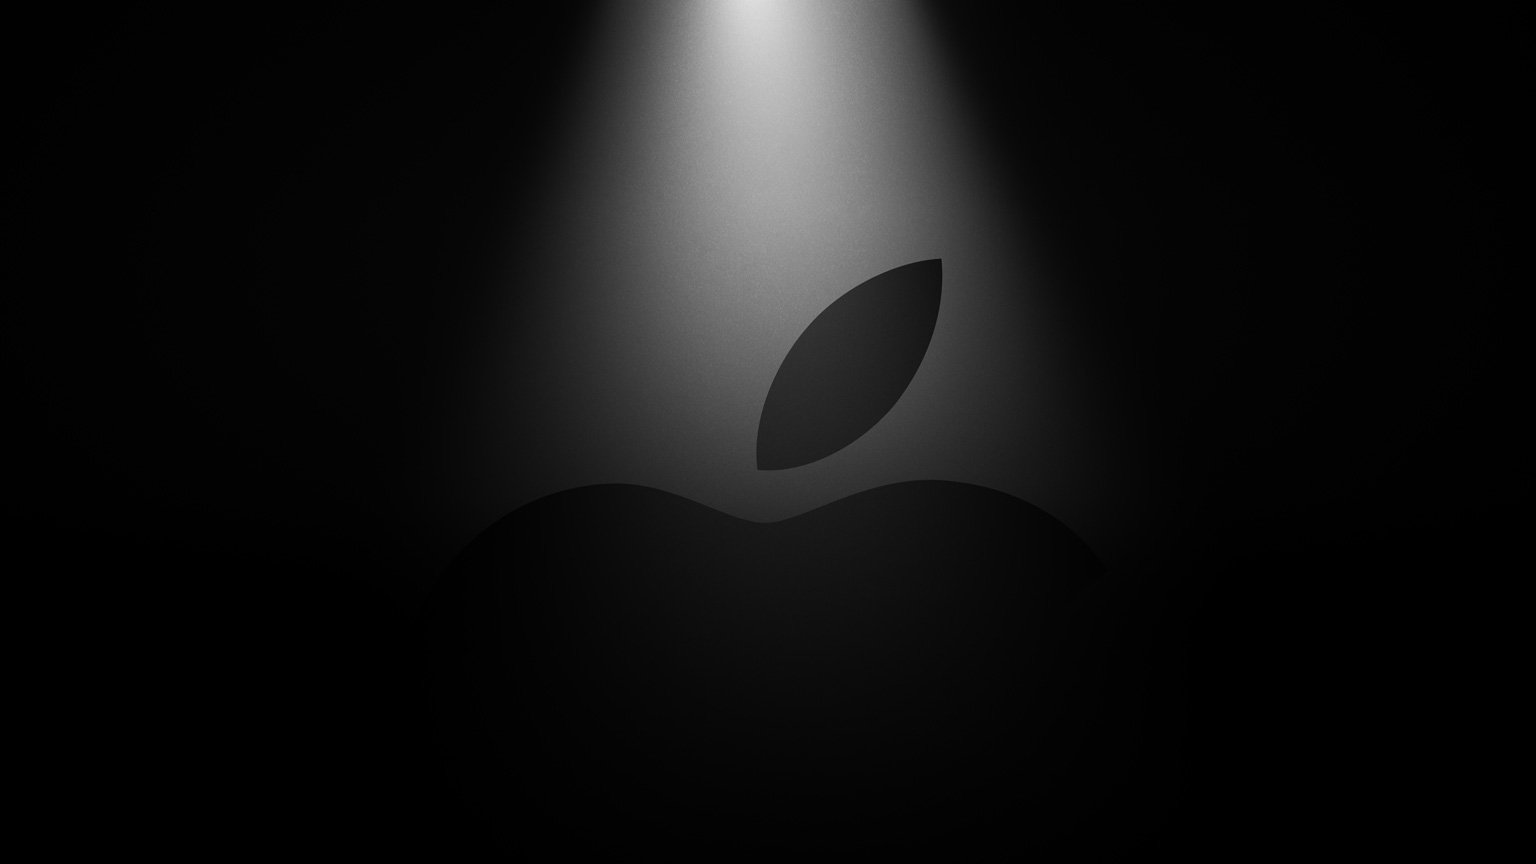 Gogle Apple mają rozkręcić rewolucję, której nie podołali giganci branży technologicznej